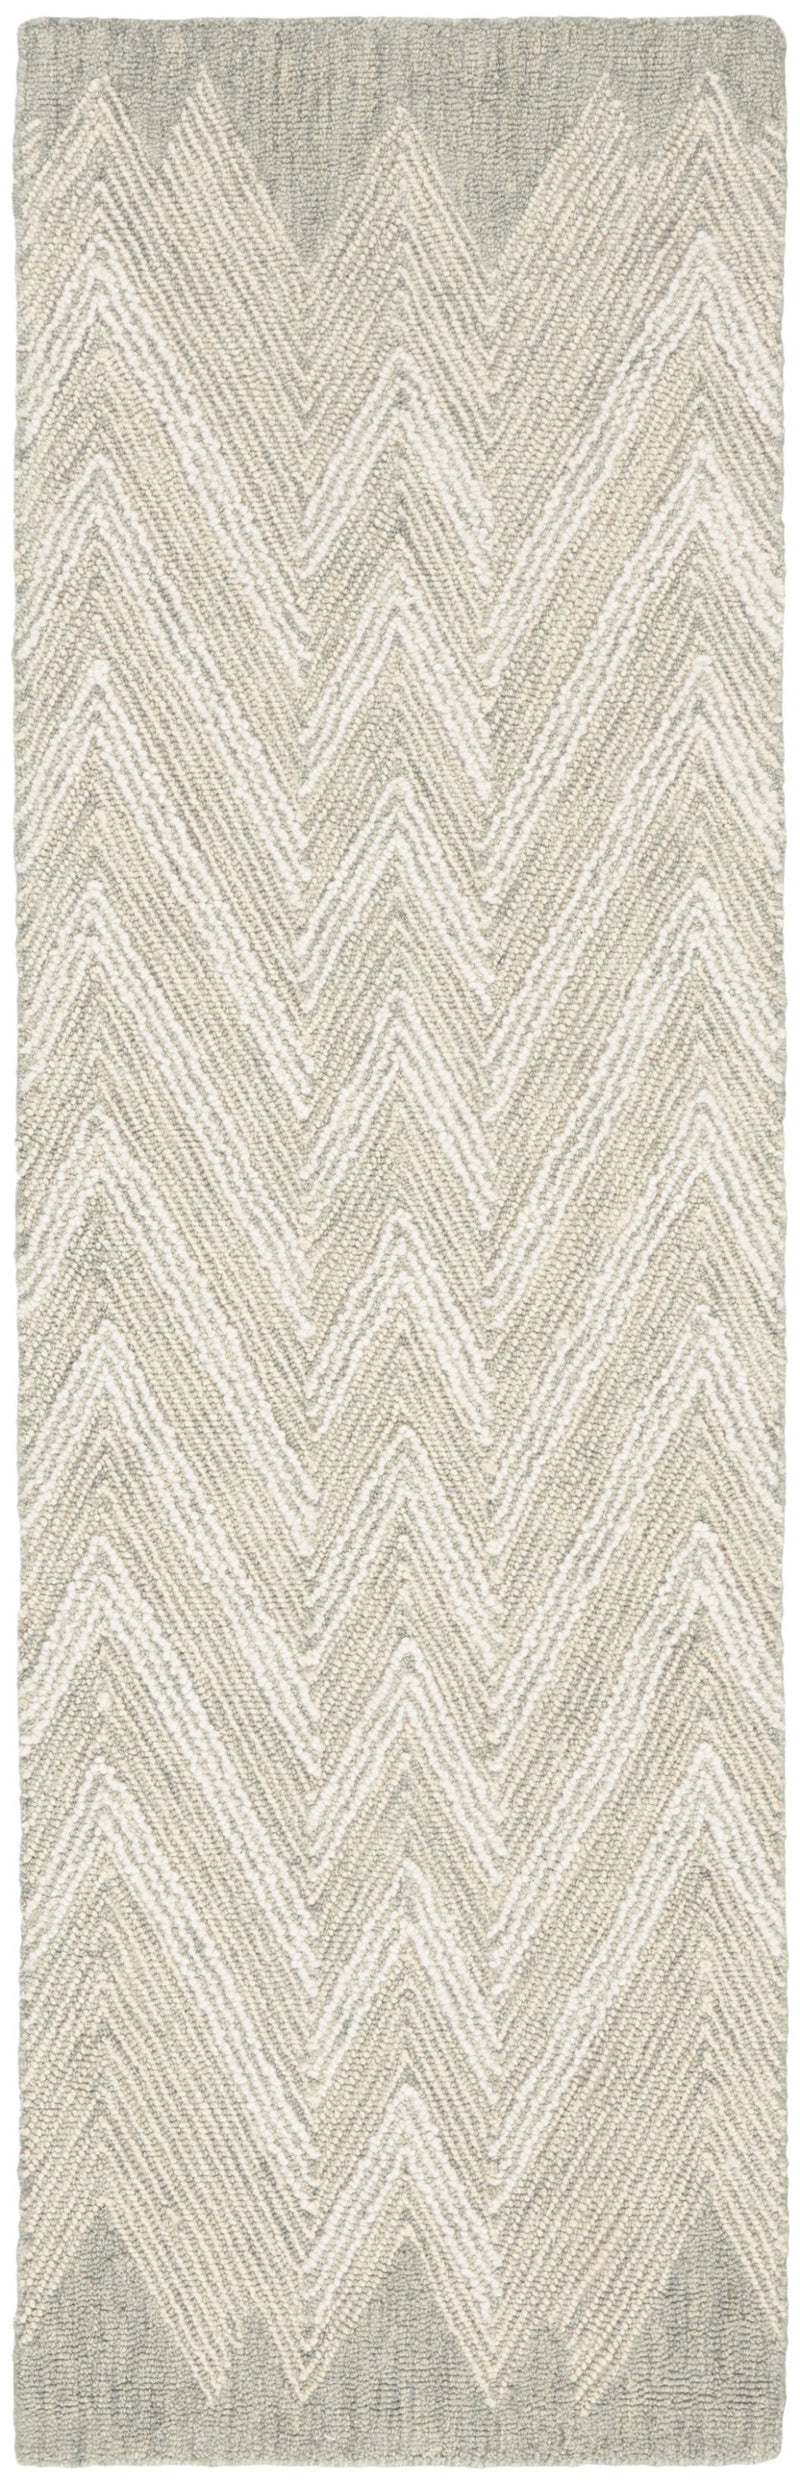 media image for interlock handmade teal rug by nourison 99446015488 redo 2 22